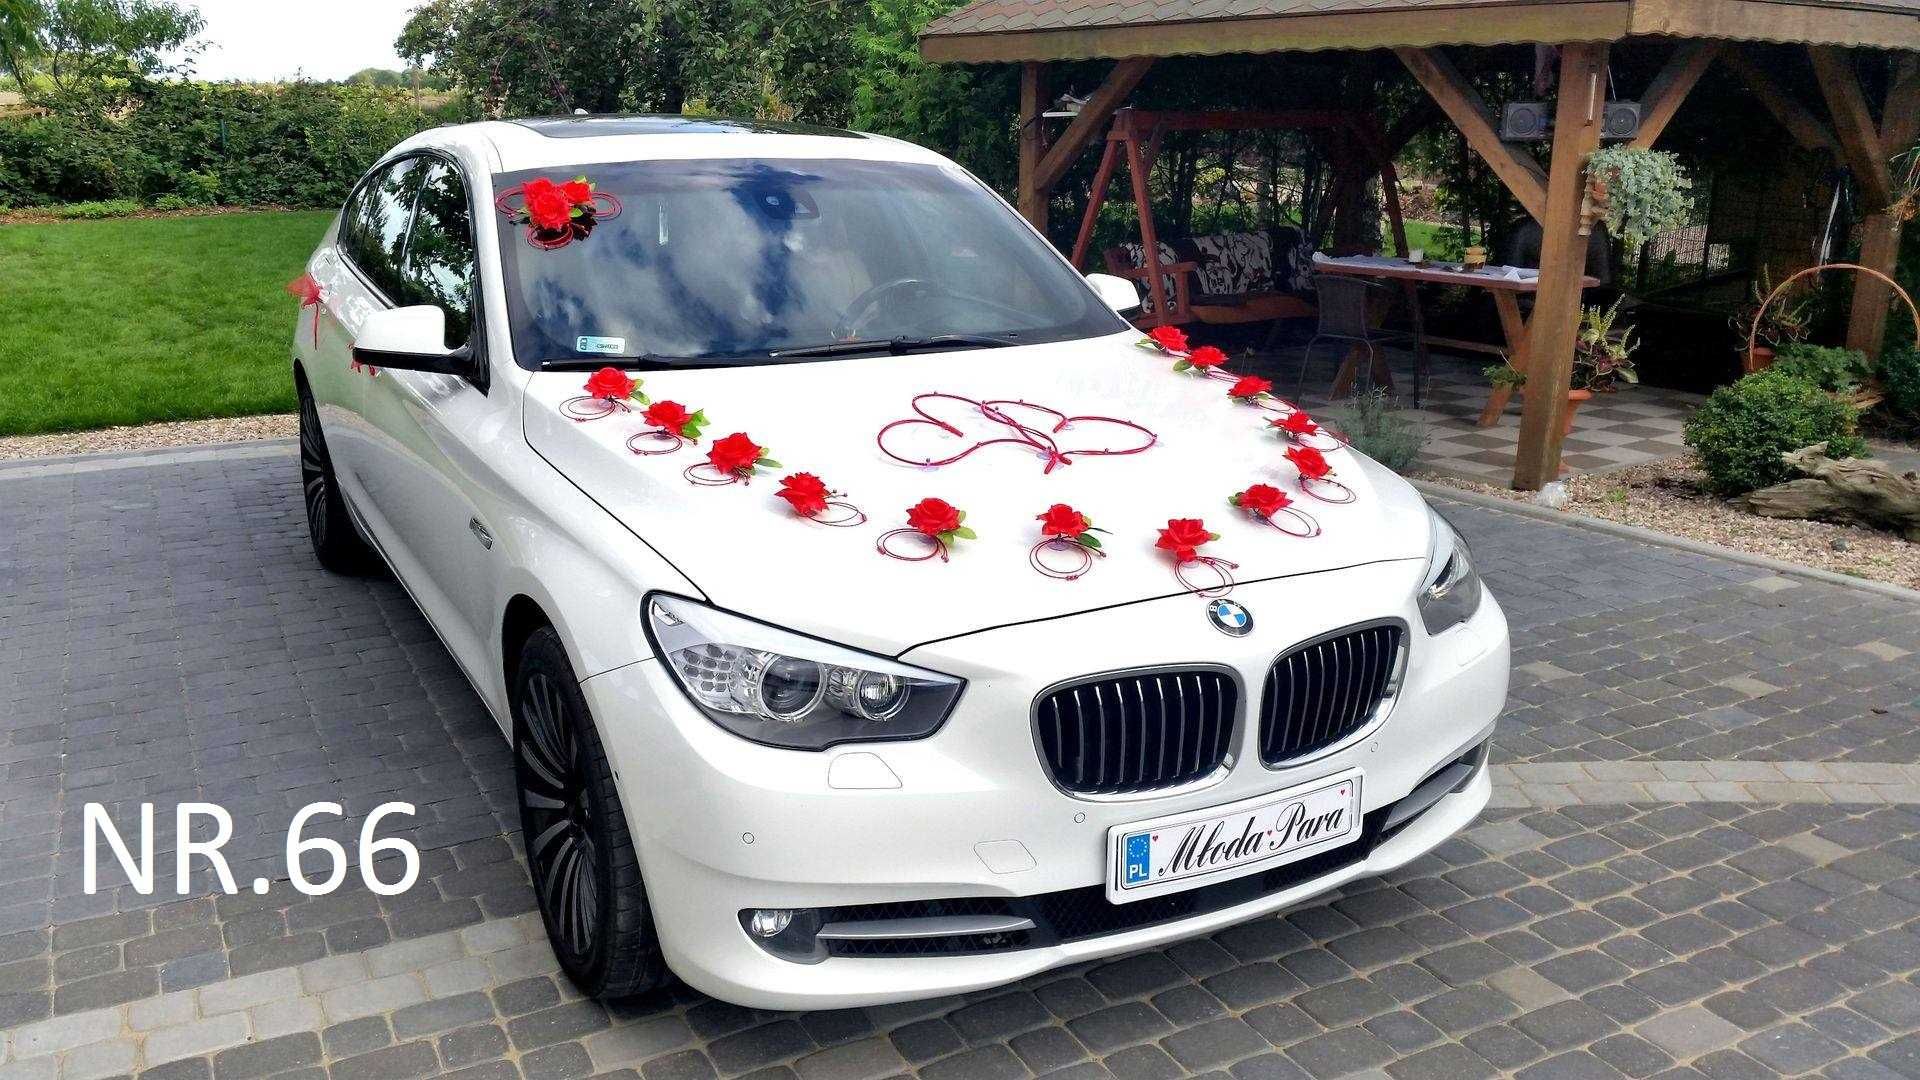 BOGATA dekoracja samochodu na samochód do ślubu.OZDOBY na auto 066